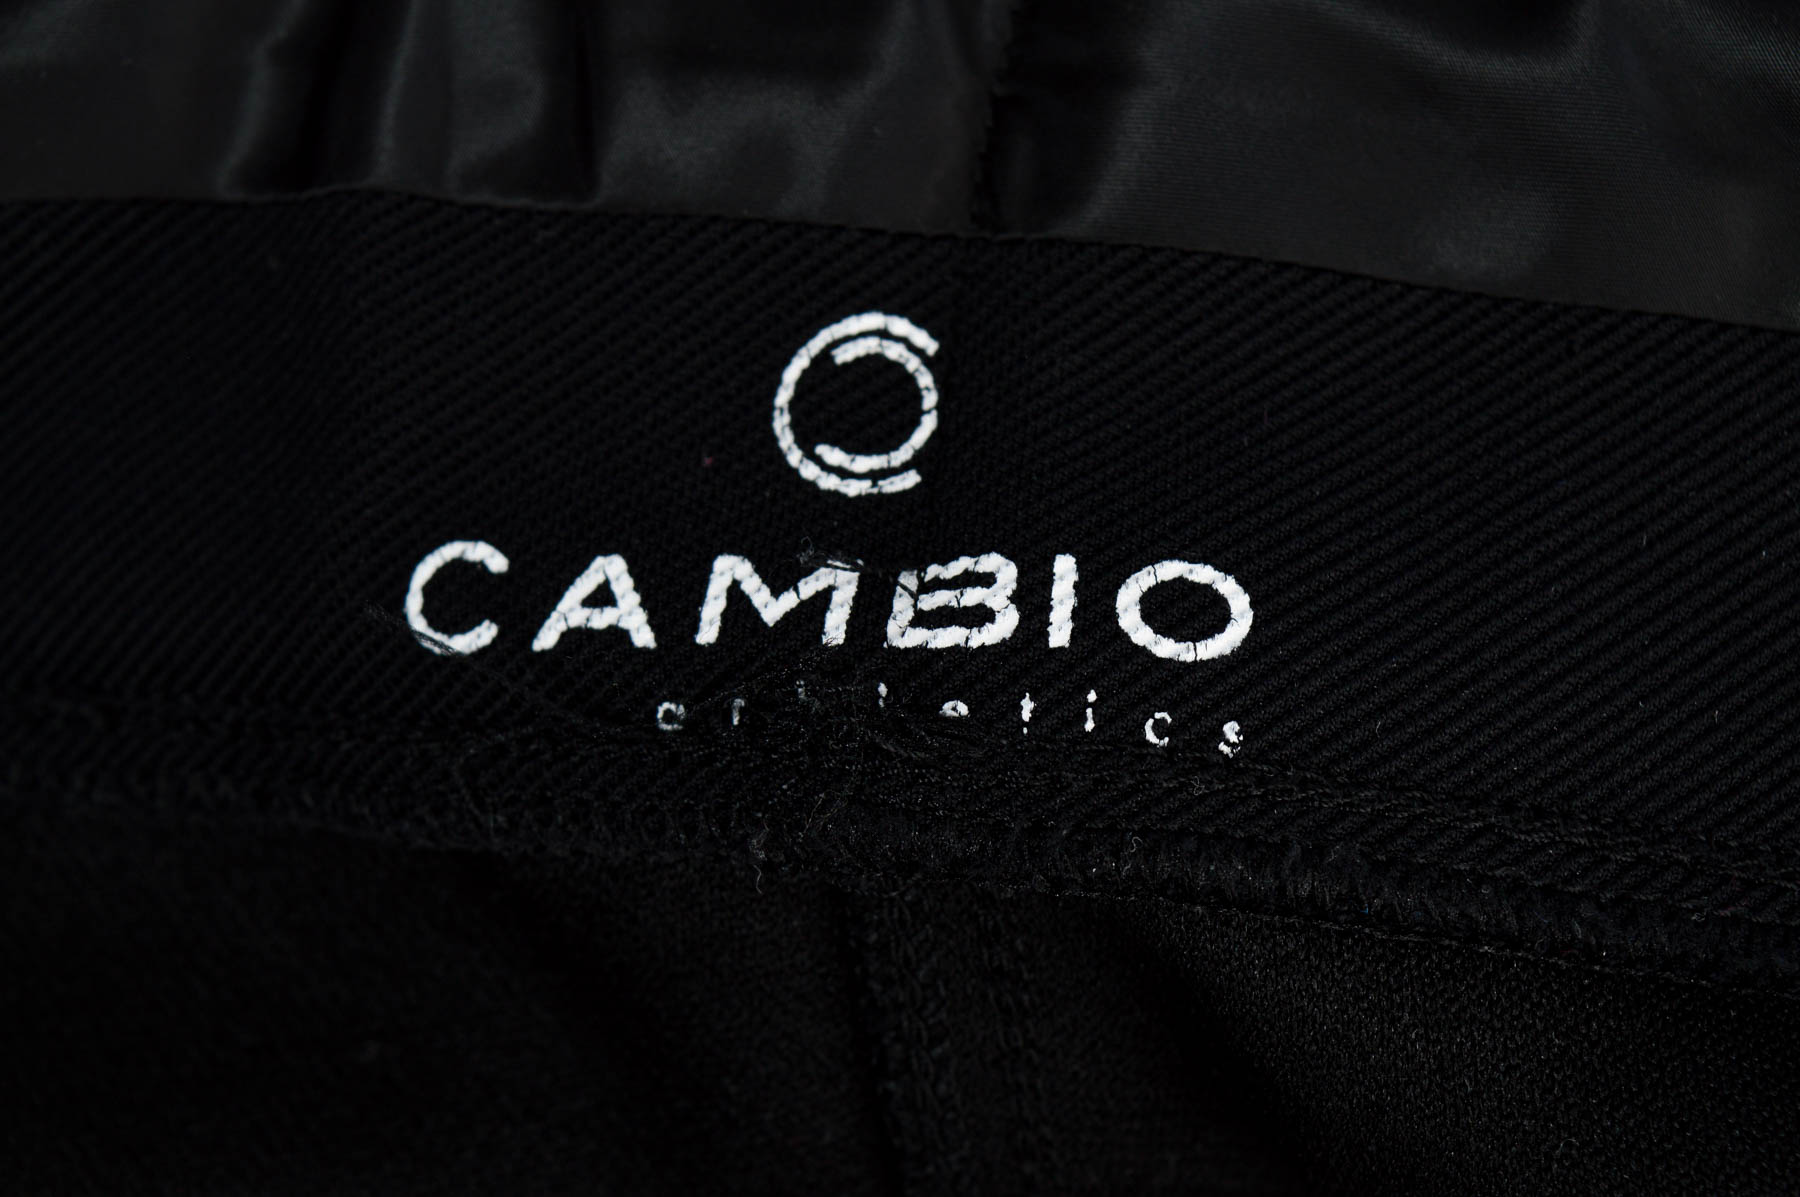 Spodnie damskie - Cambio - 2